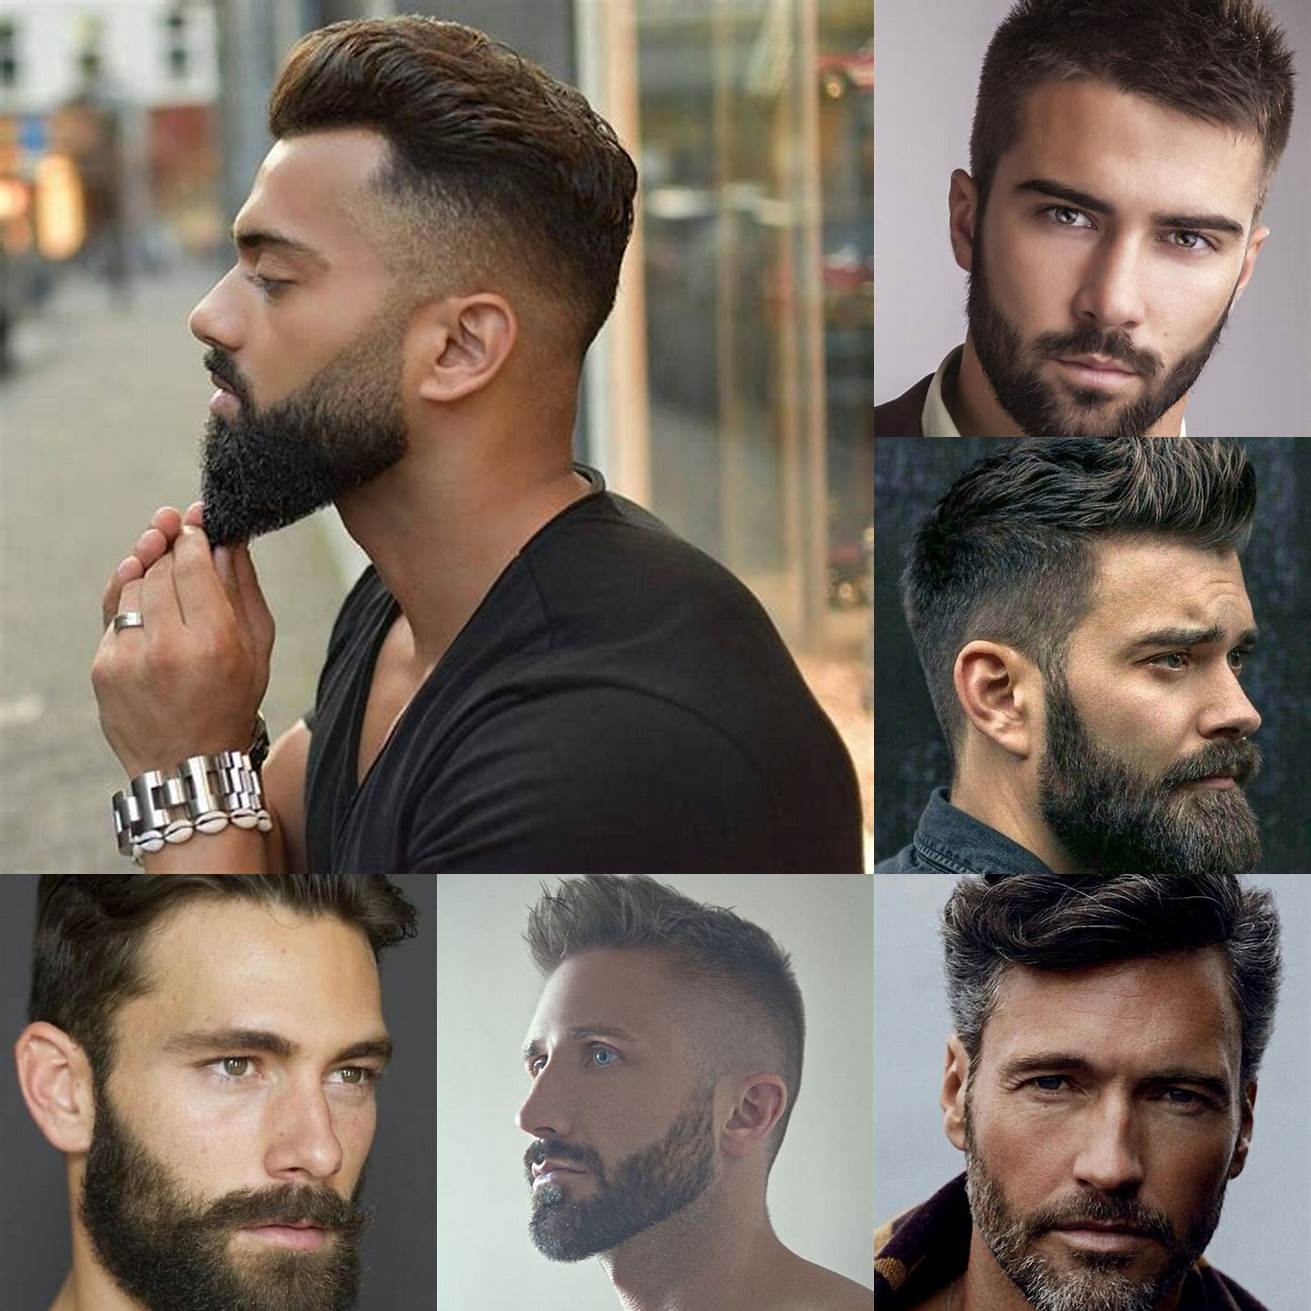 Un homme avec une barbe bien taillée et une coupe de cheveux courte